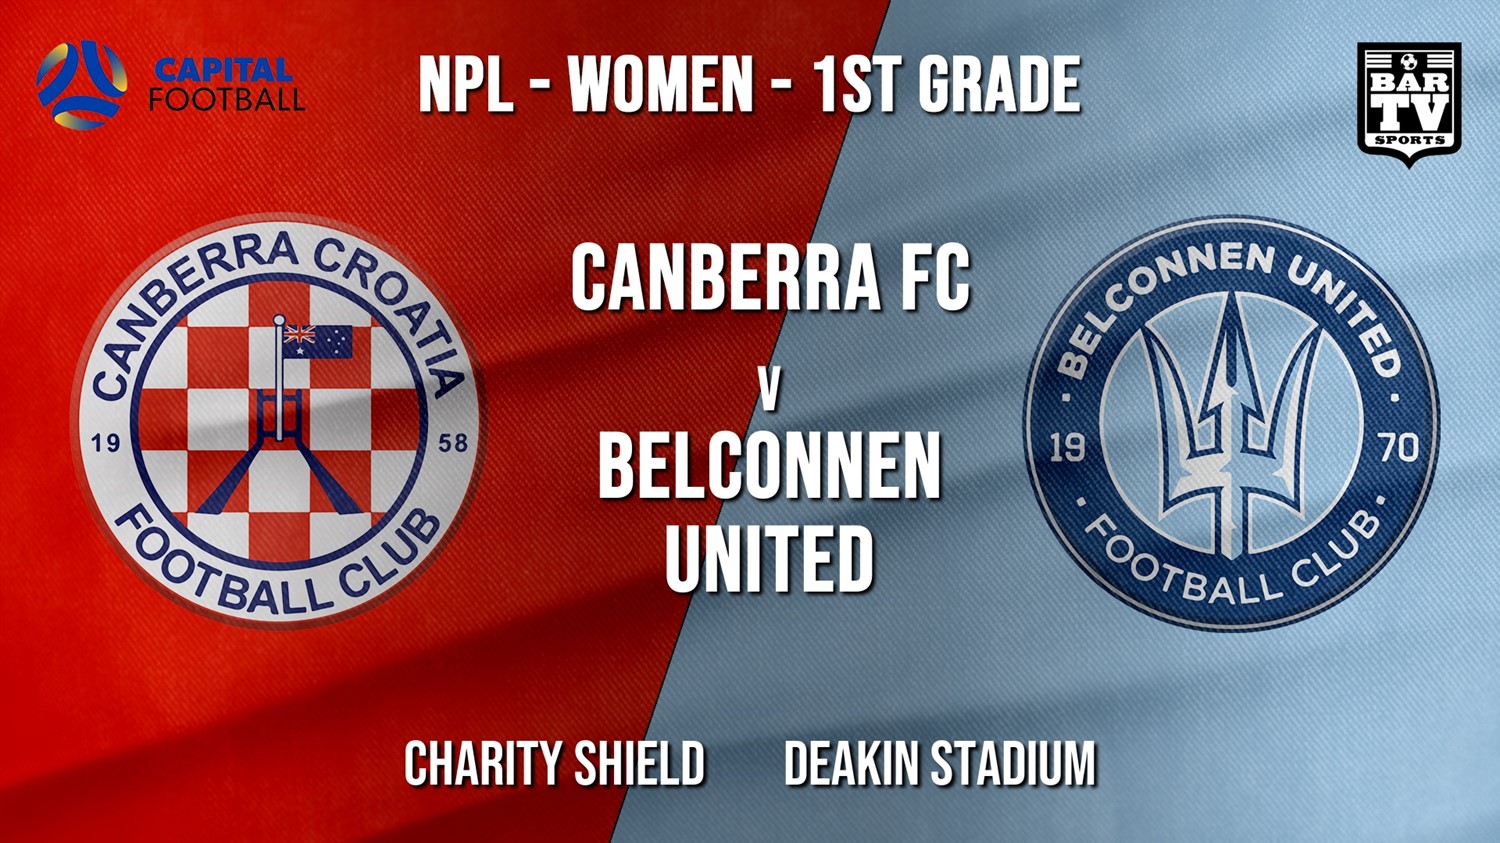 NPLW - Capital Charity Shield - Canberra FC (women) v Belconnen United (women) Slate Image